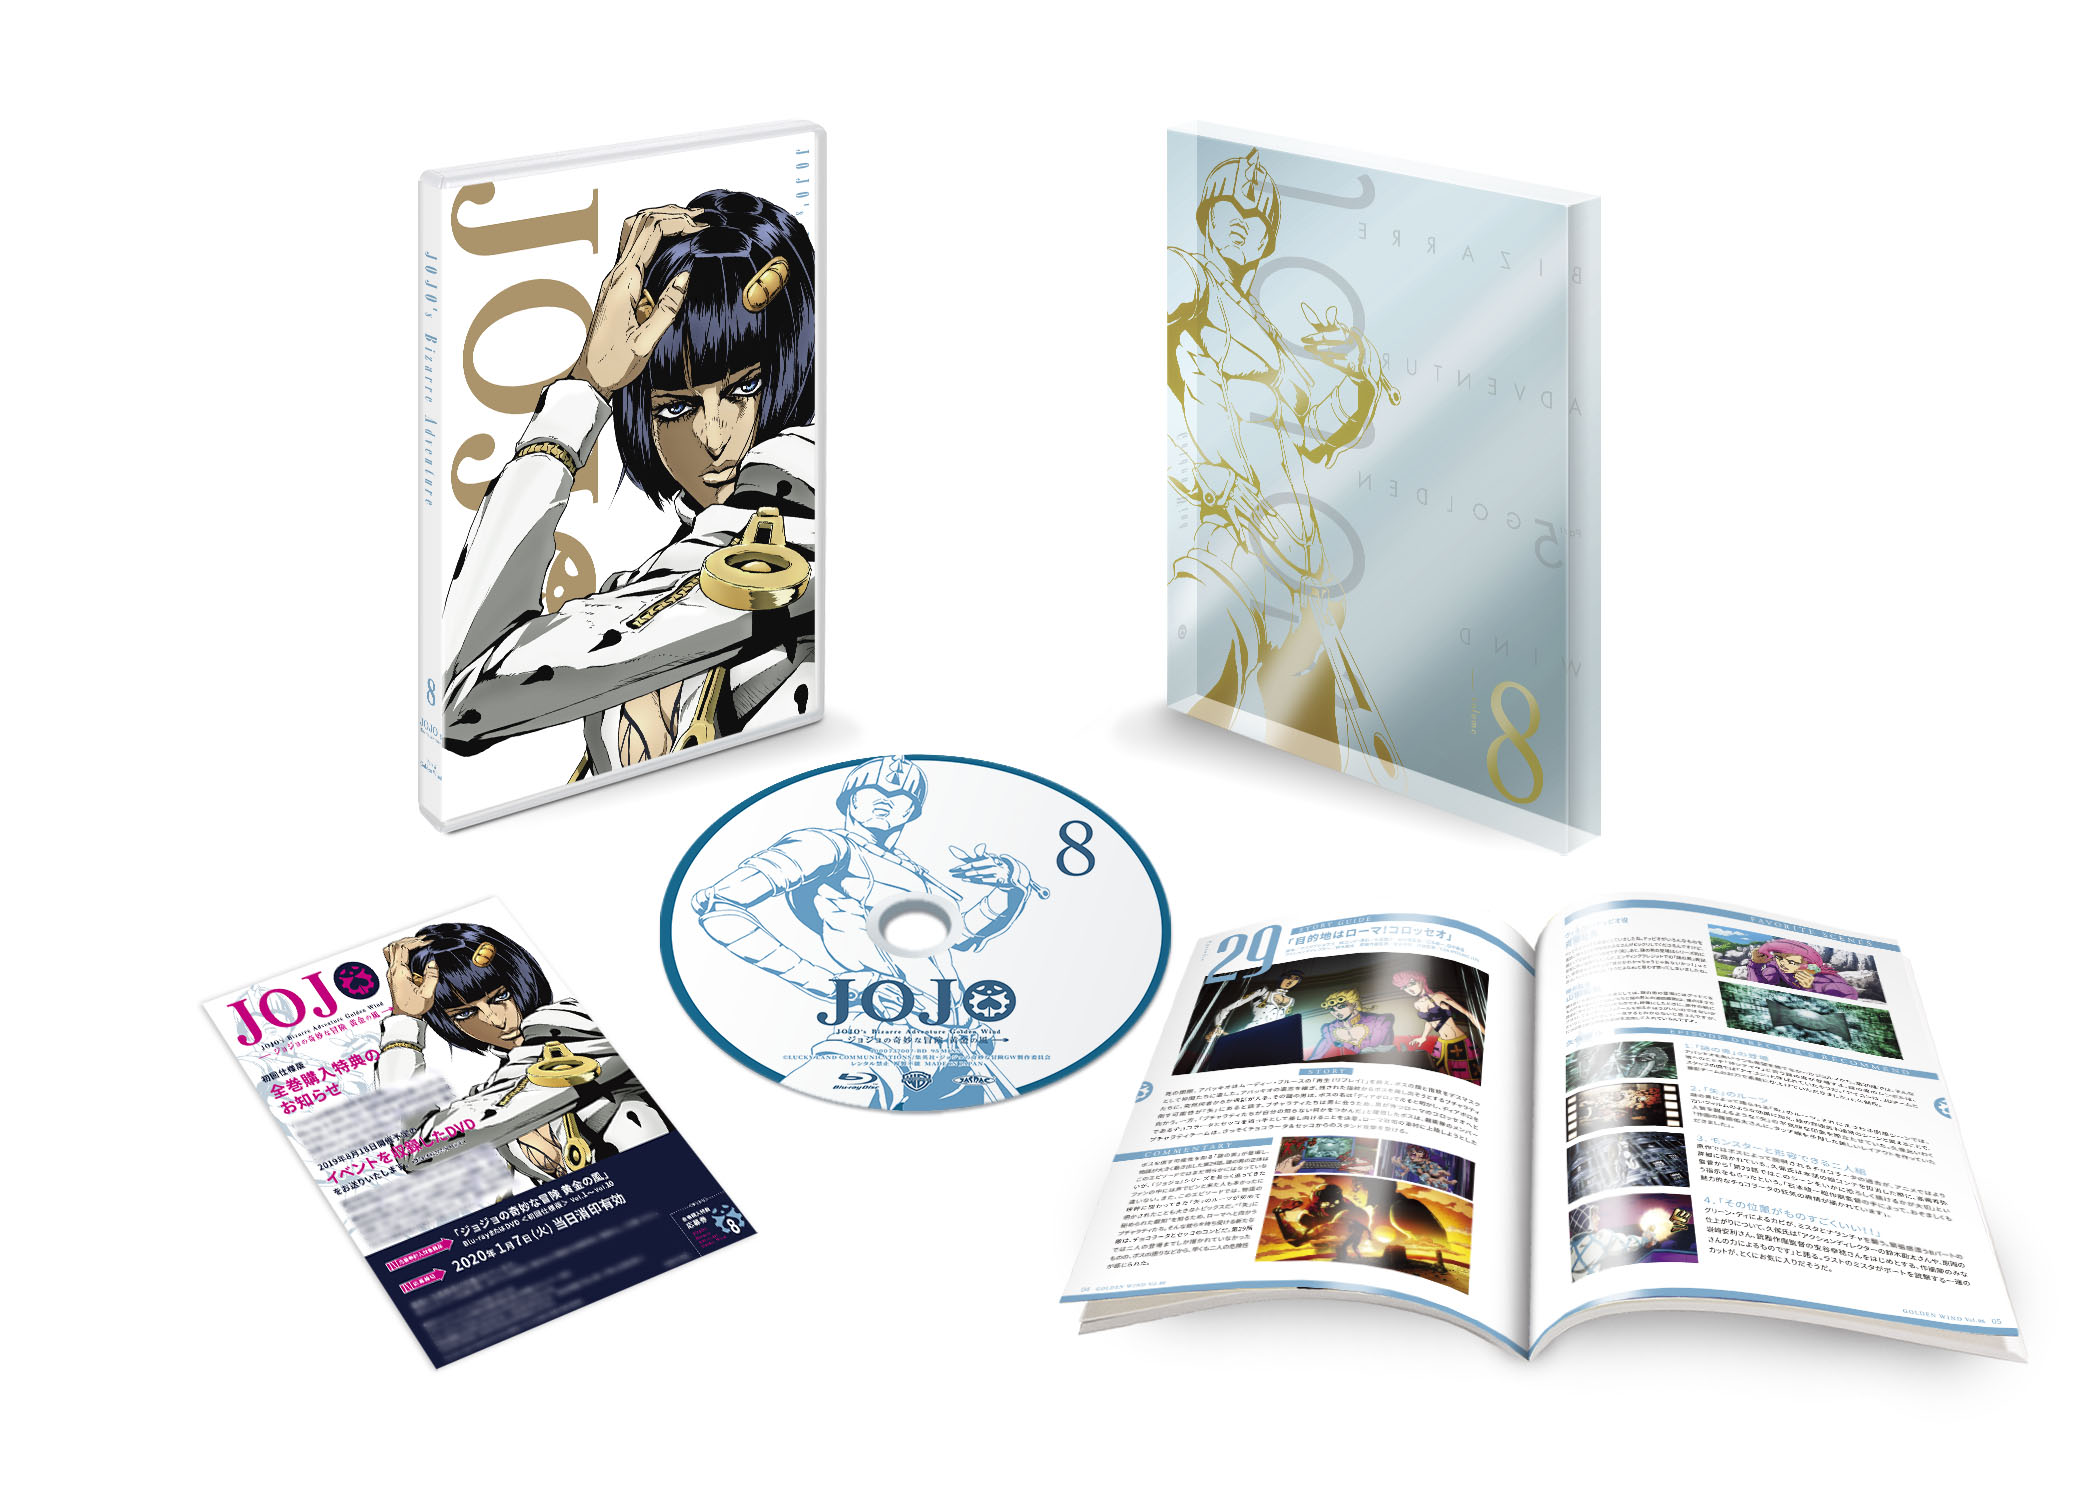 「ジョジョの奇妙な冒険 黄金の風」Blu-ray & DVD Vol.8 初回仕様版【Blu-ray/DVD】